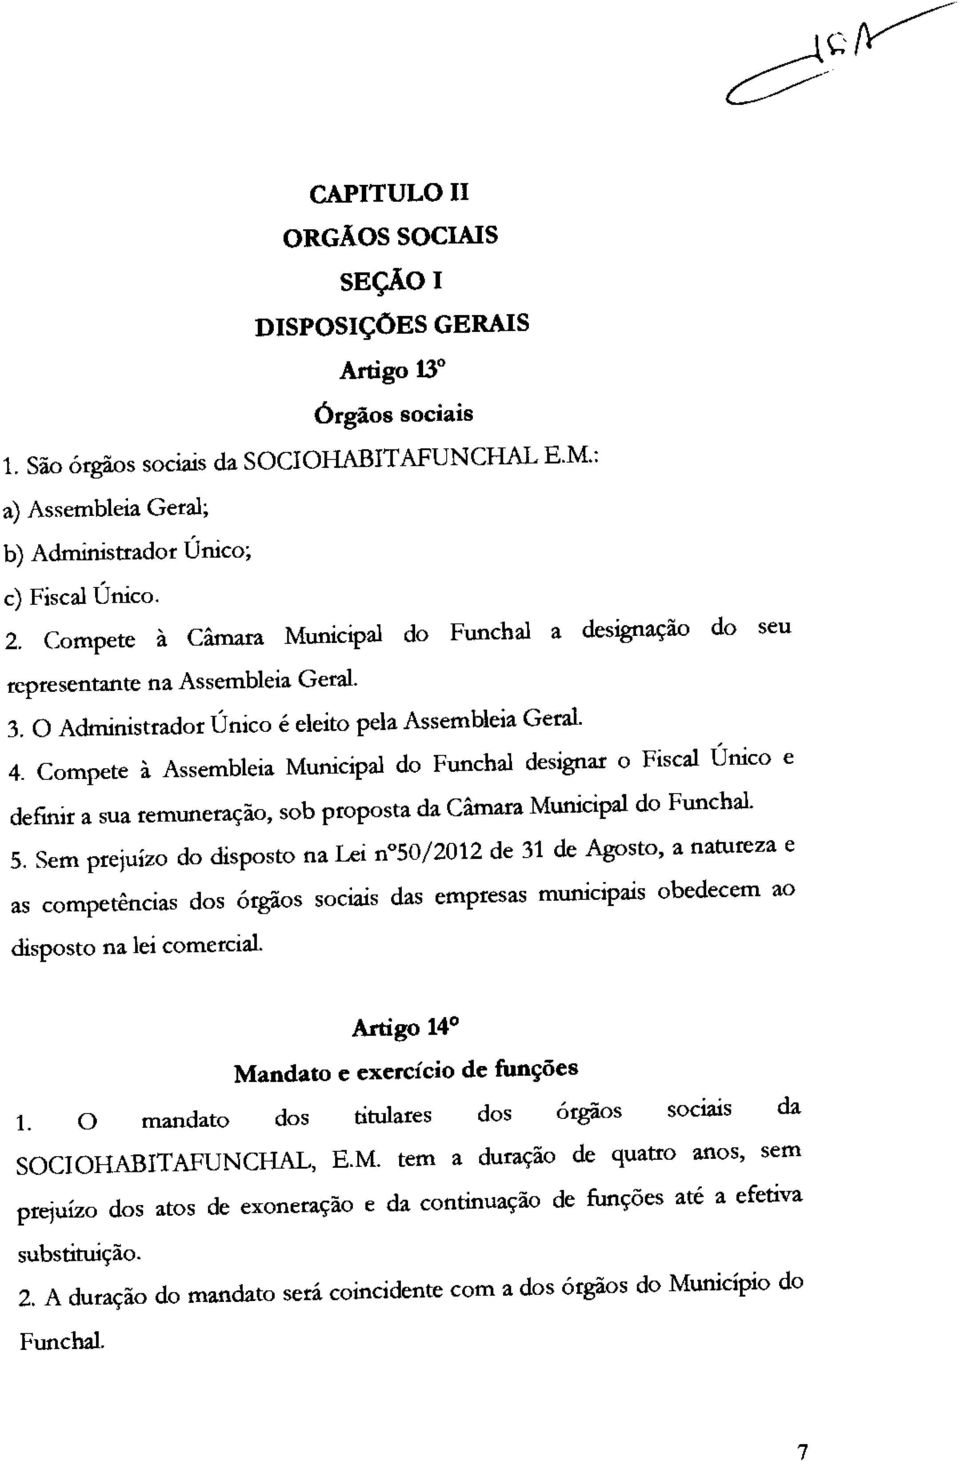 Compete à Assembleia Municipal do Funchal designar o Fiscal Único e definir a sua remuneração, sob proposta da Câmara Municipal do Funchal. 5.